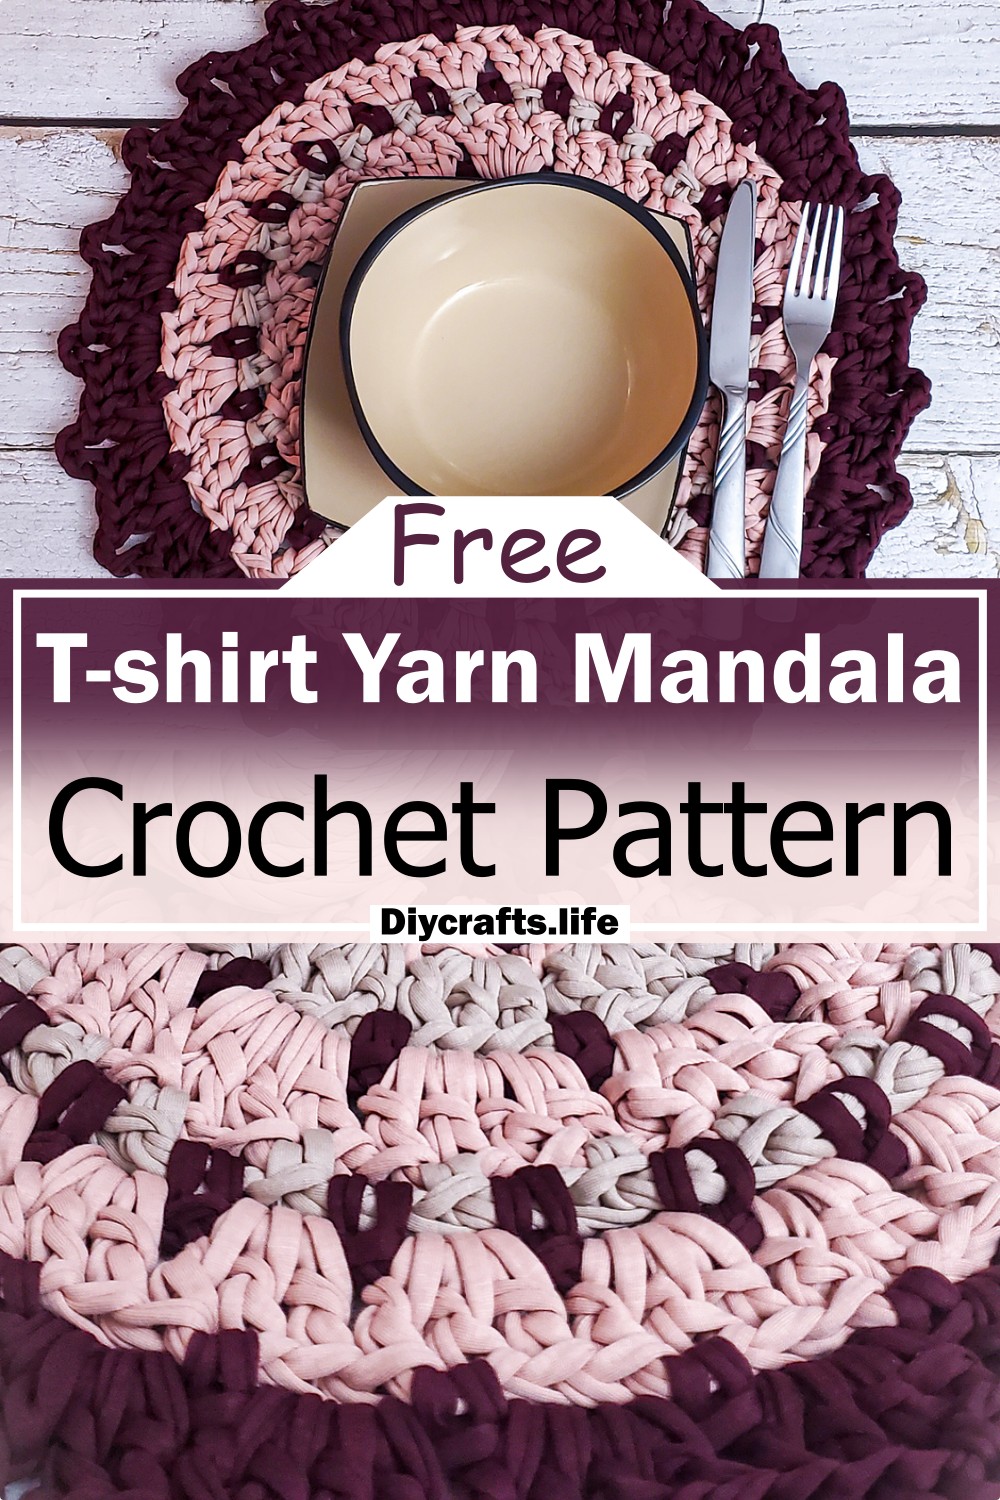 T-shirt Yarn Mandala